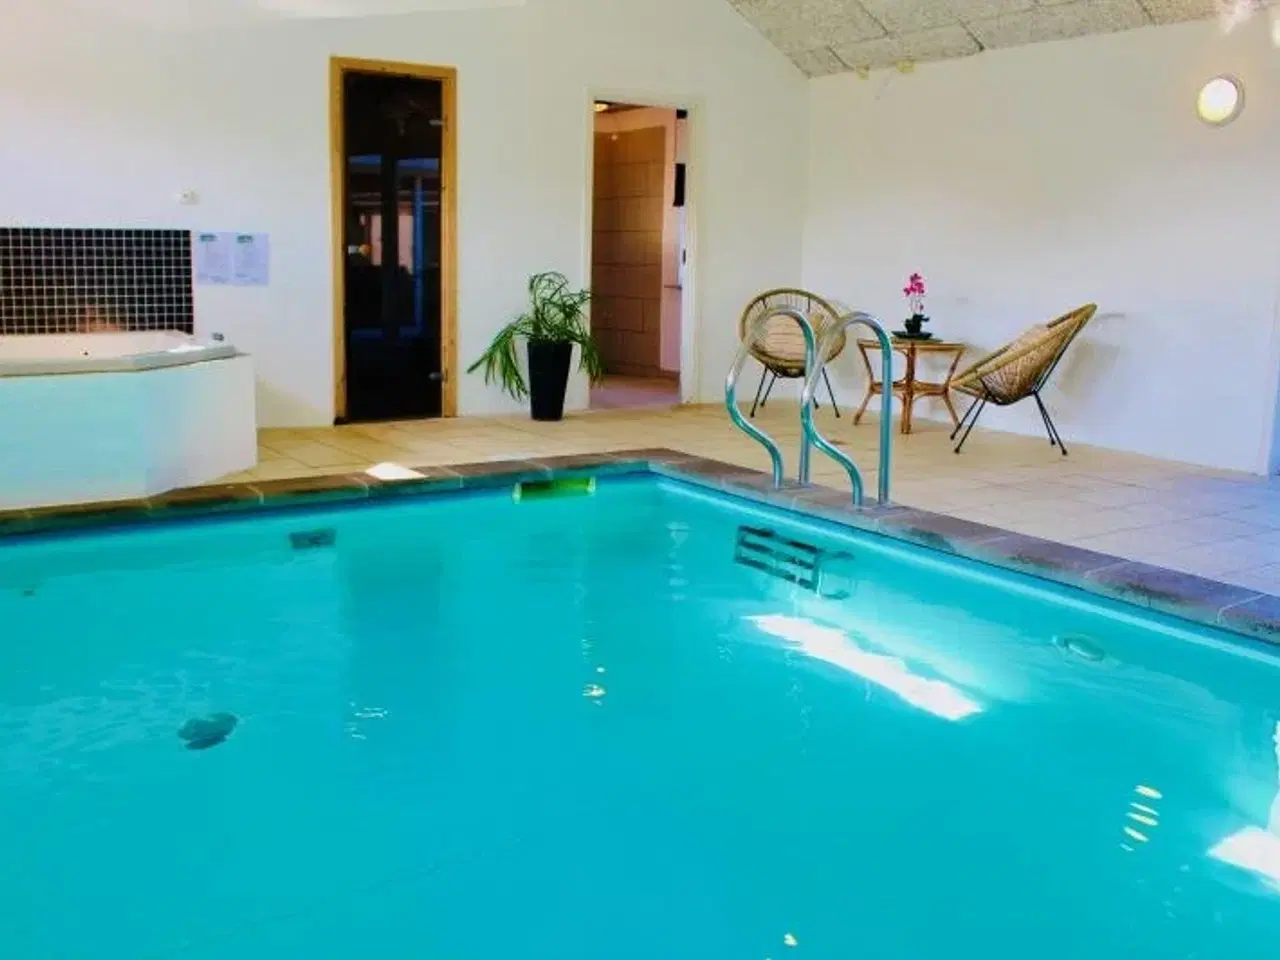 Billede 2 - Villa Grandissimo - Stort feriehus på 460 m2 med pool (30 personer)